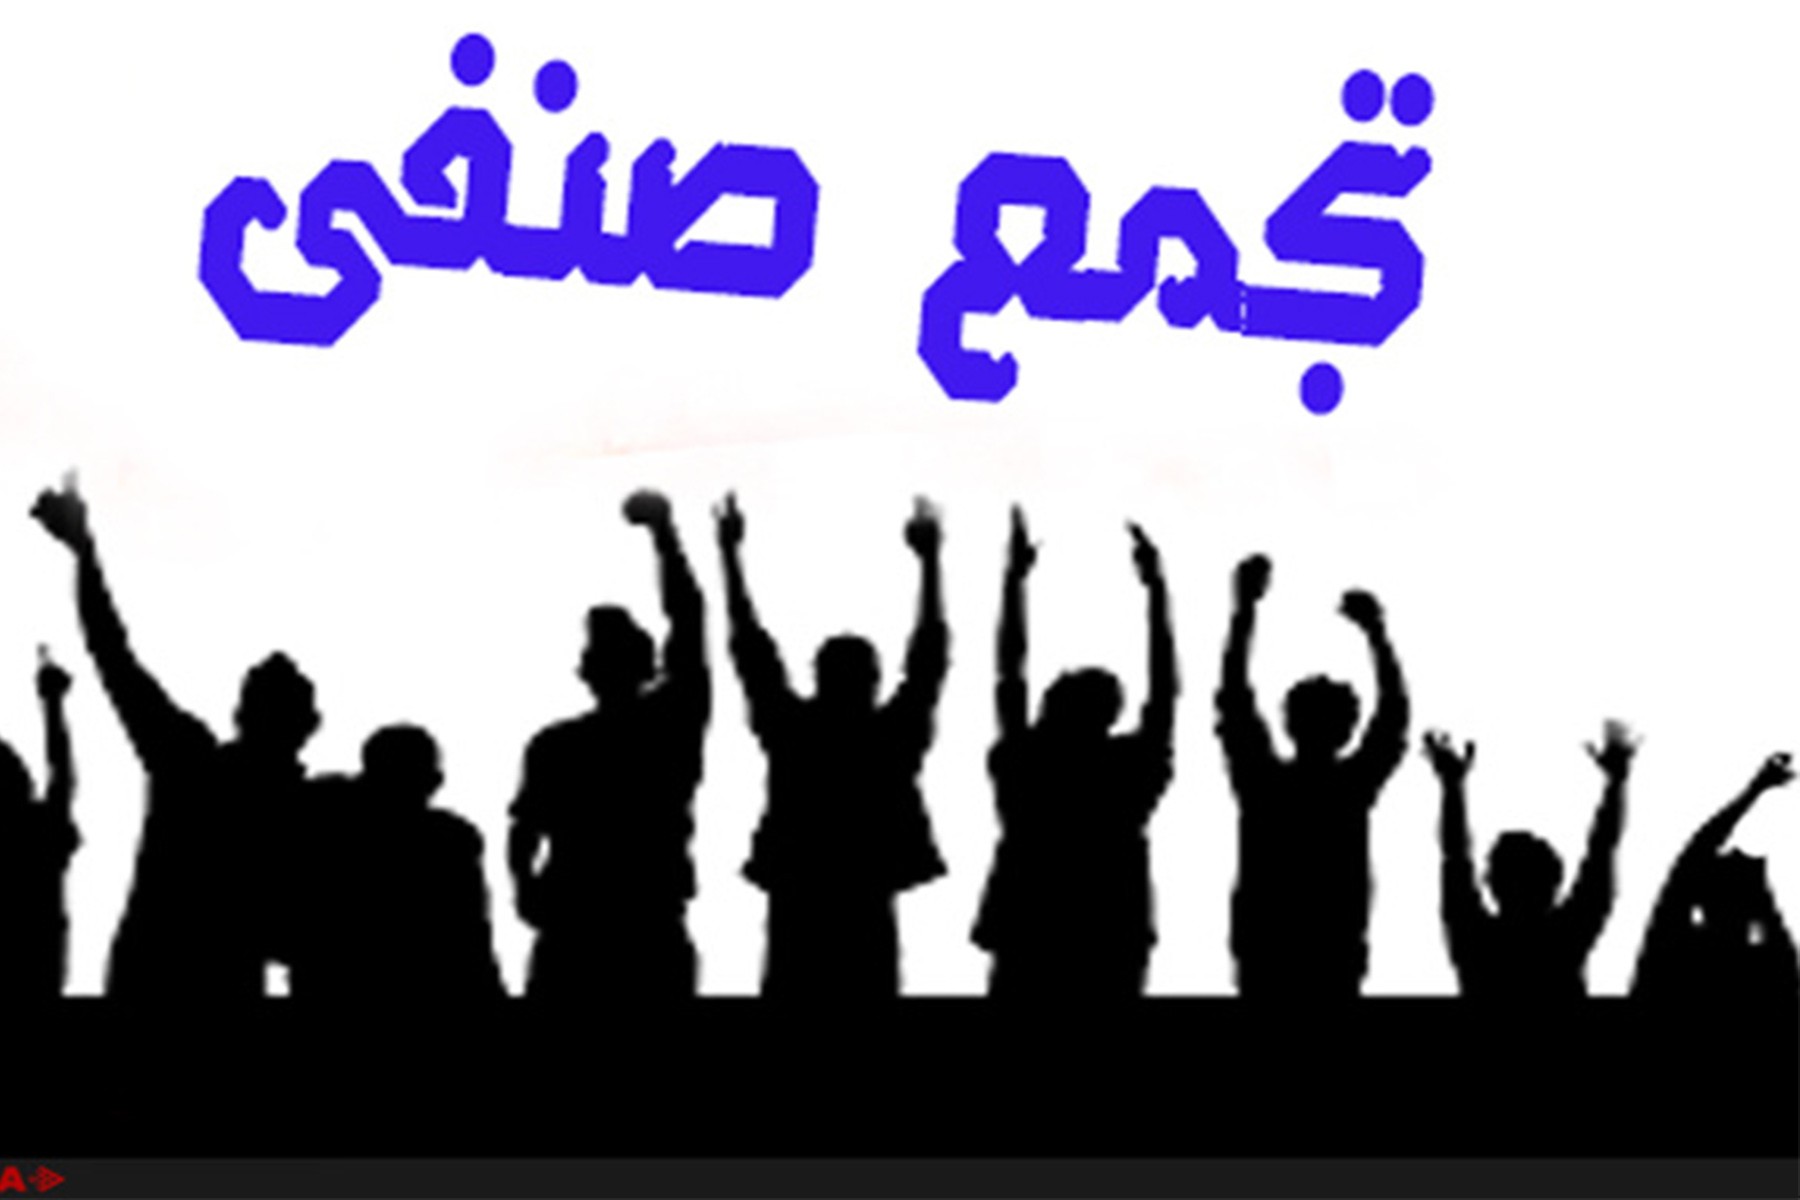 تداوم اعتراضات صنفی در شهرهای مختلف ایران